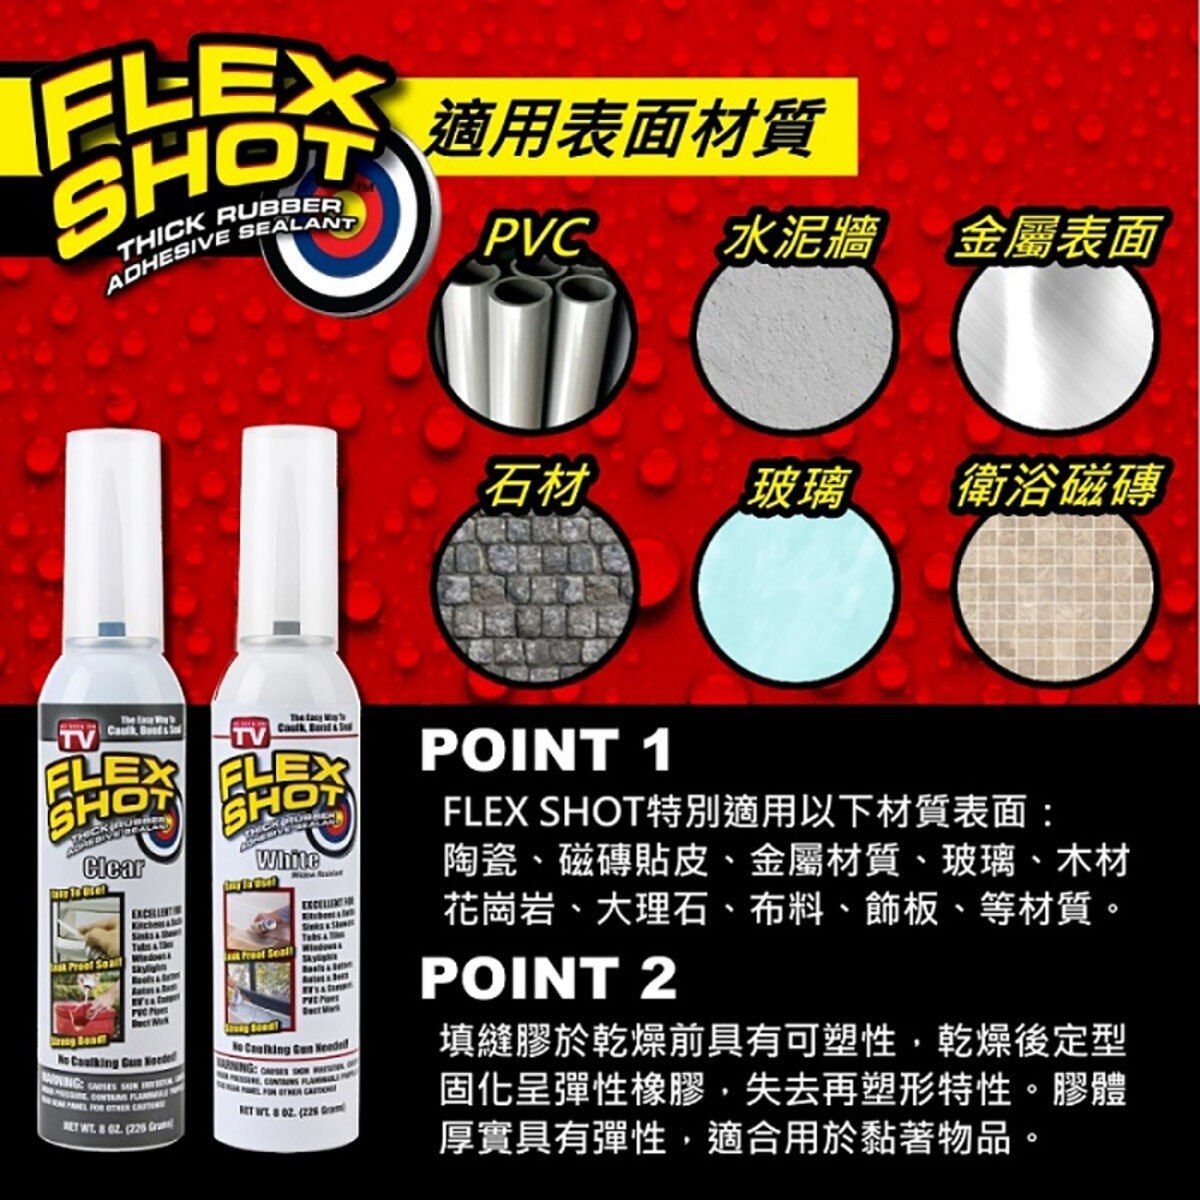 FLEX SHOT 速效填縫膠-杏仁色，速效快乾，無氟氯碳化物成份。